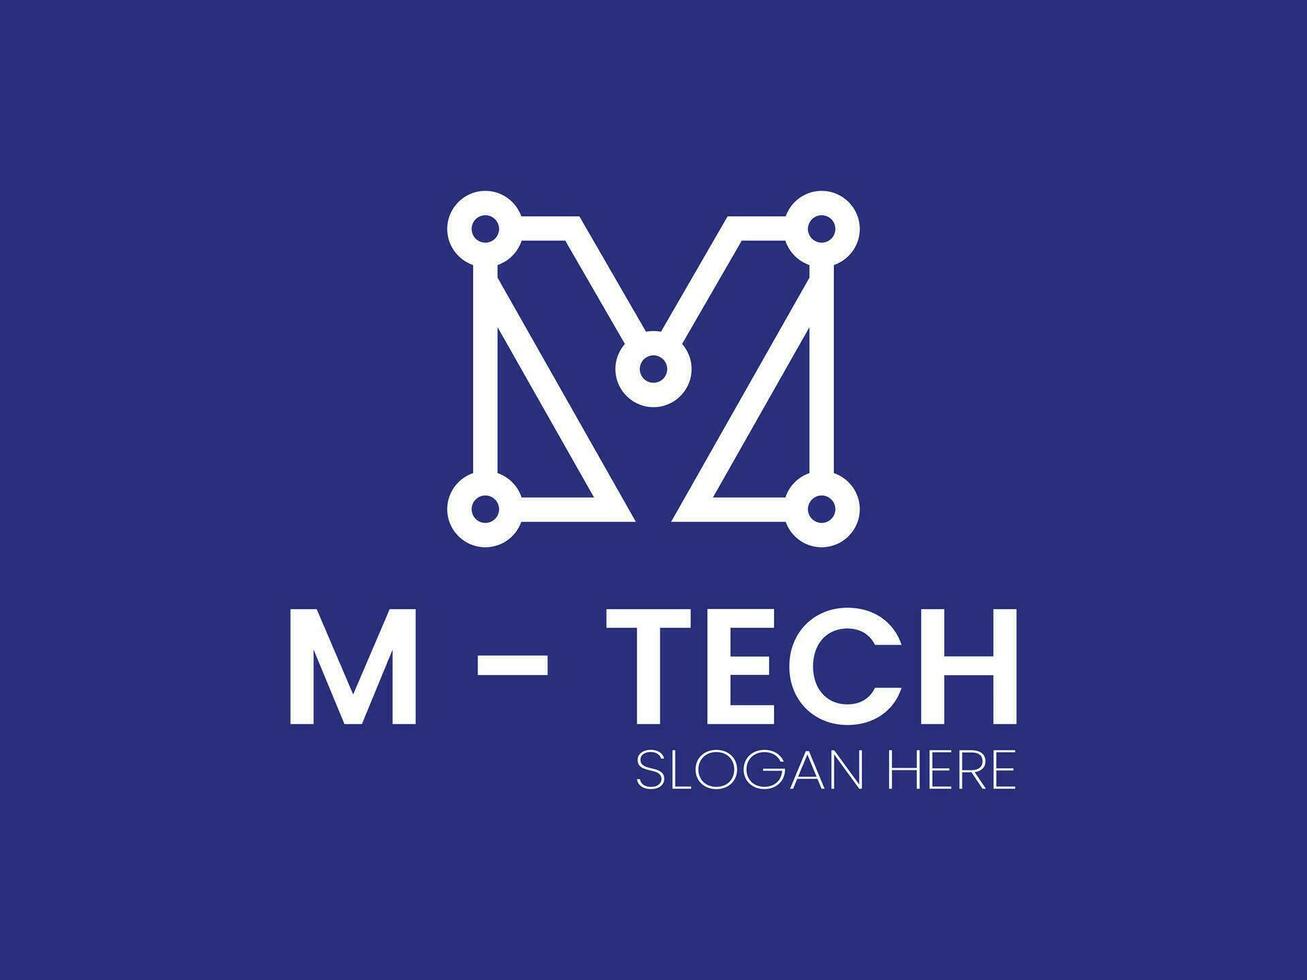 metro tecnología logo diseño vector modelo